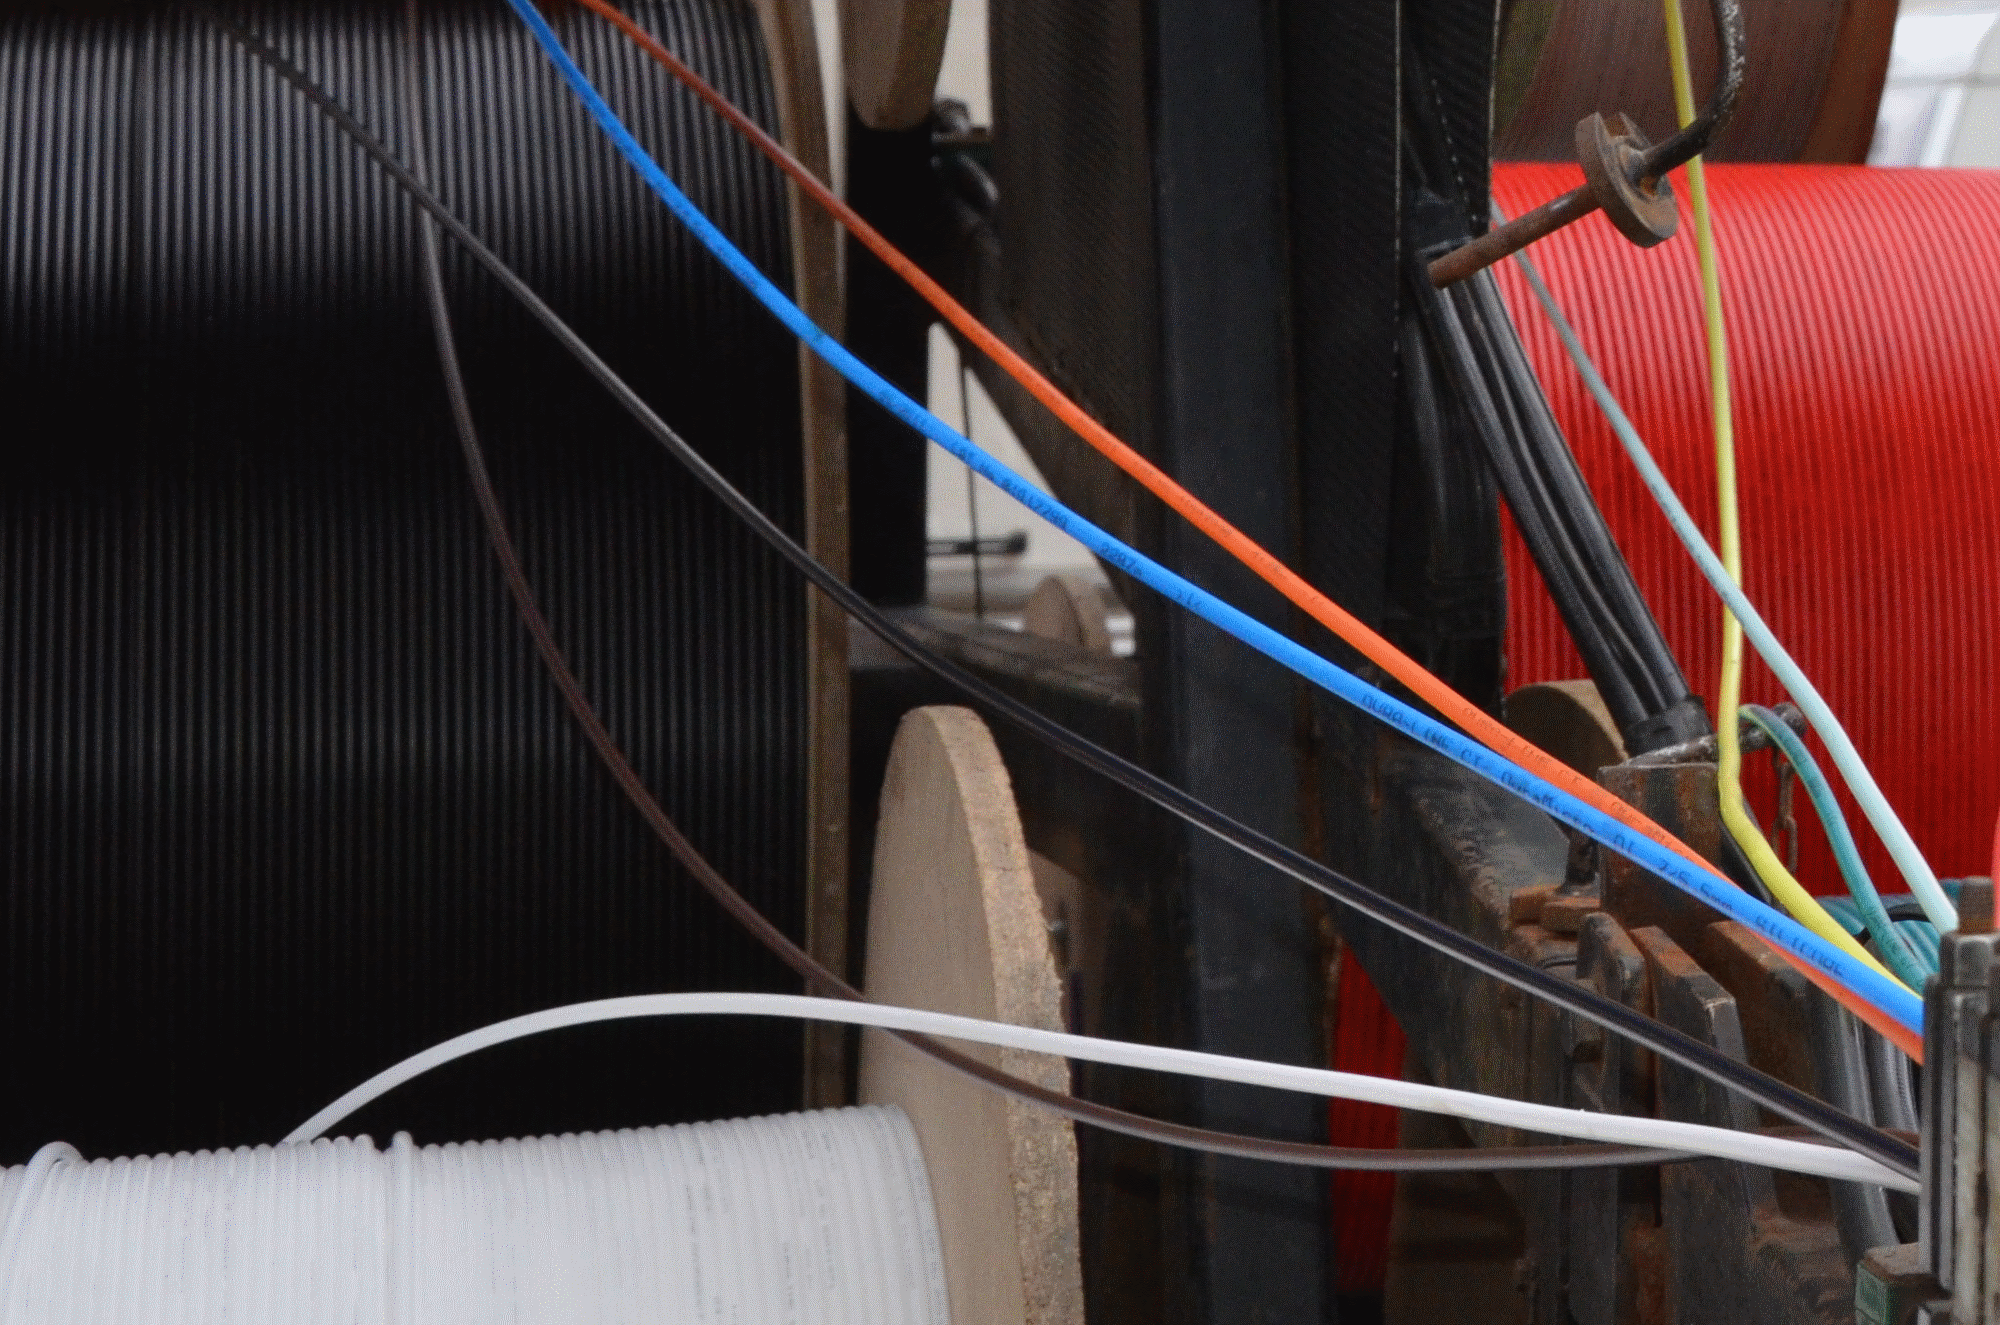 Färgade kablar för fiberanslutning. Kabeltrummorna står tätt i bakgrunden medan kablarna dras ut och läggs på plats vid fiberblåsningen.